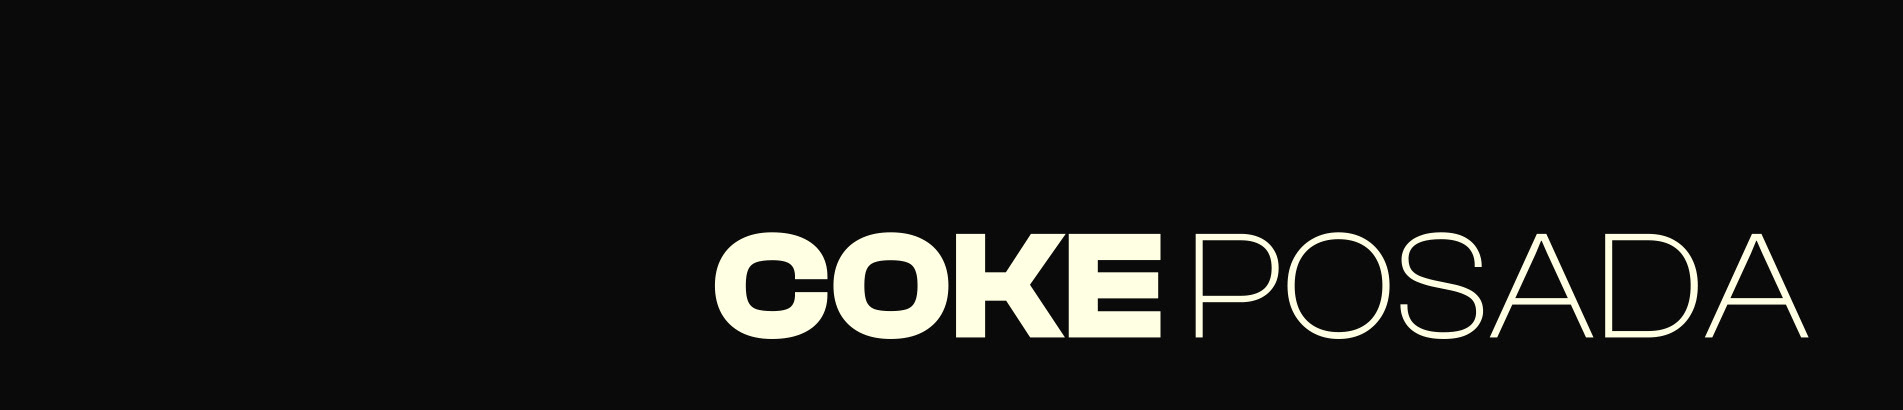 Jorge Posada (Coke)'s profile banner